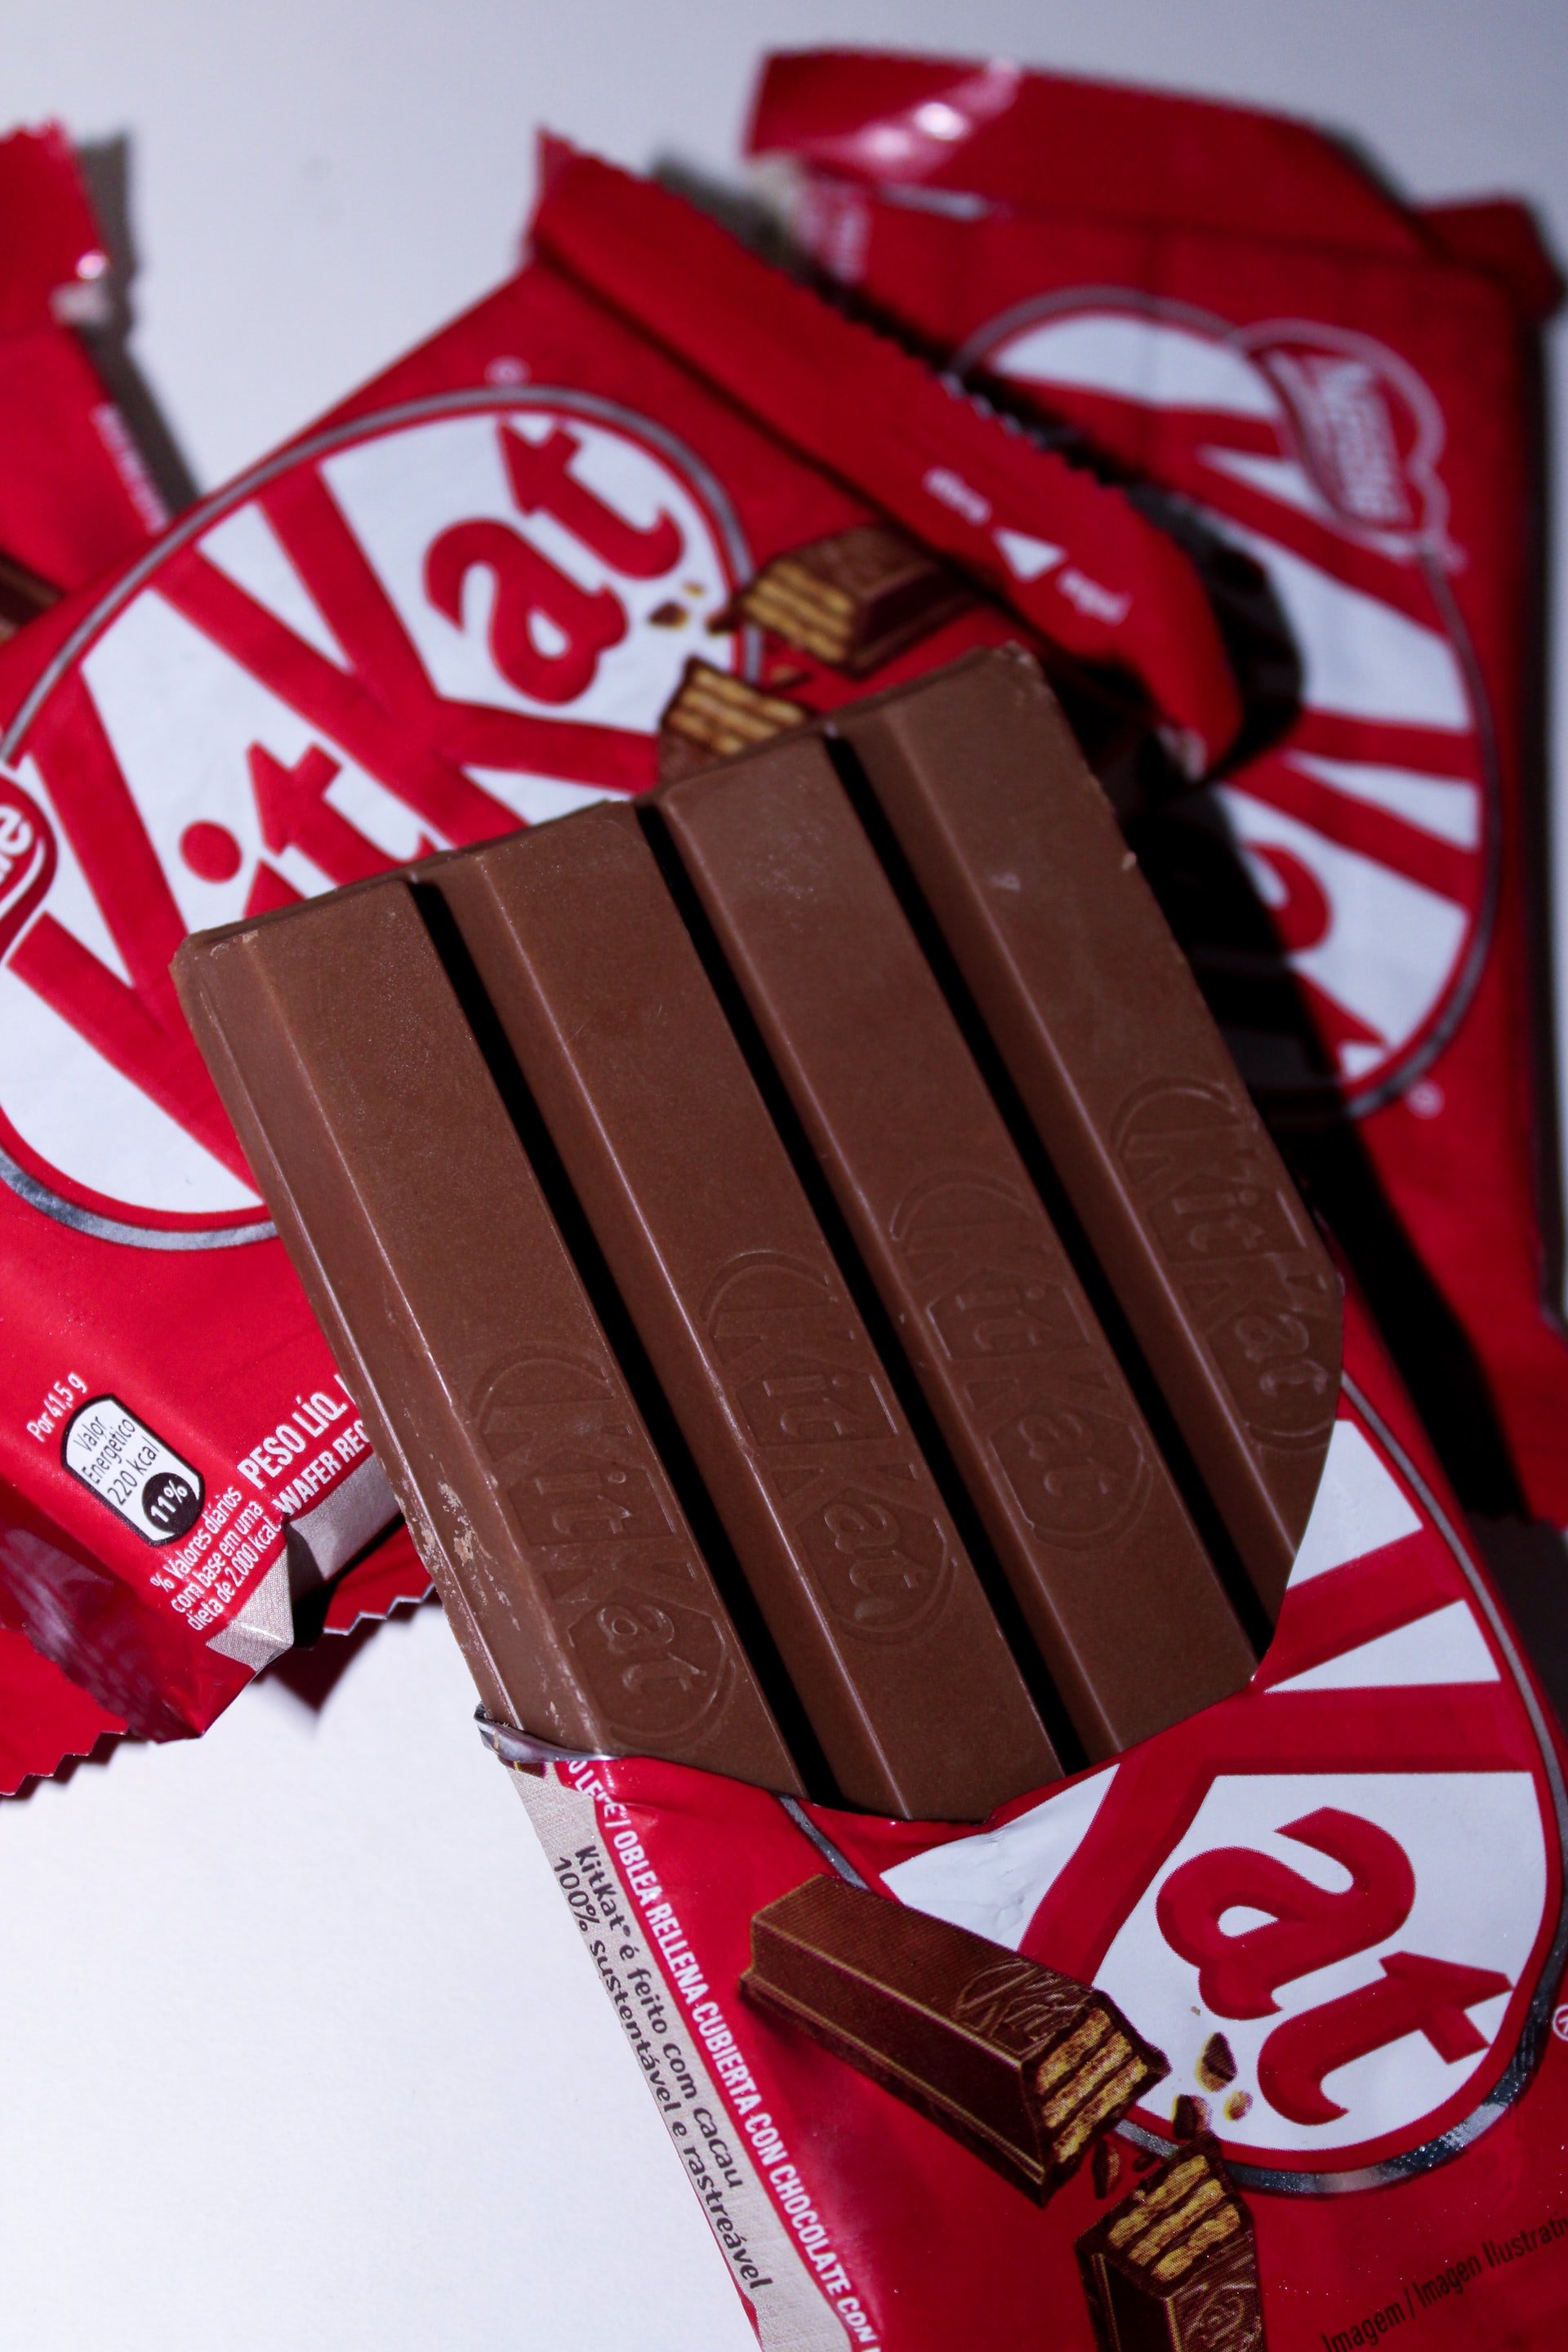 Kitkat-Schokoriegel | Quelle: Unsplash